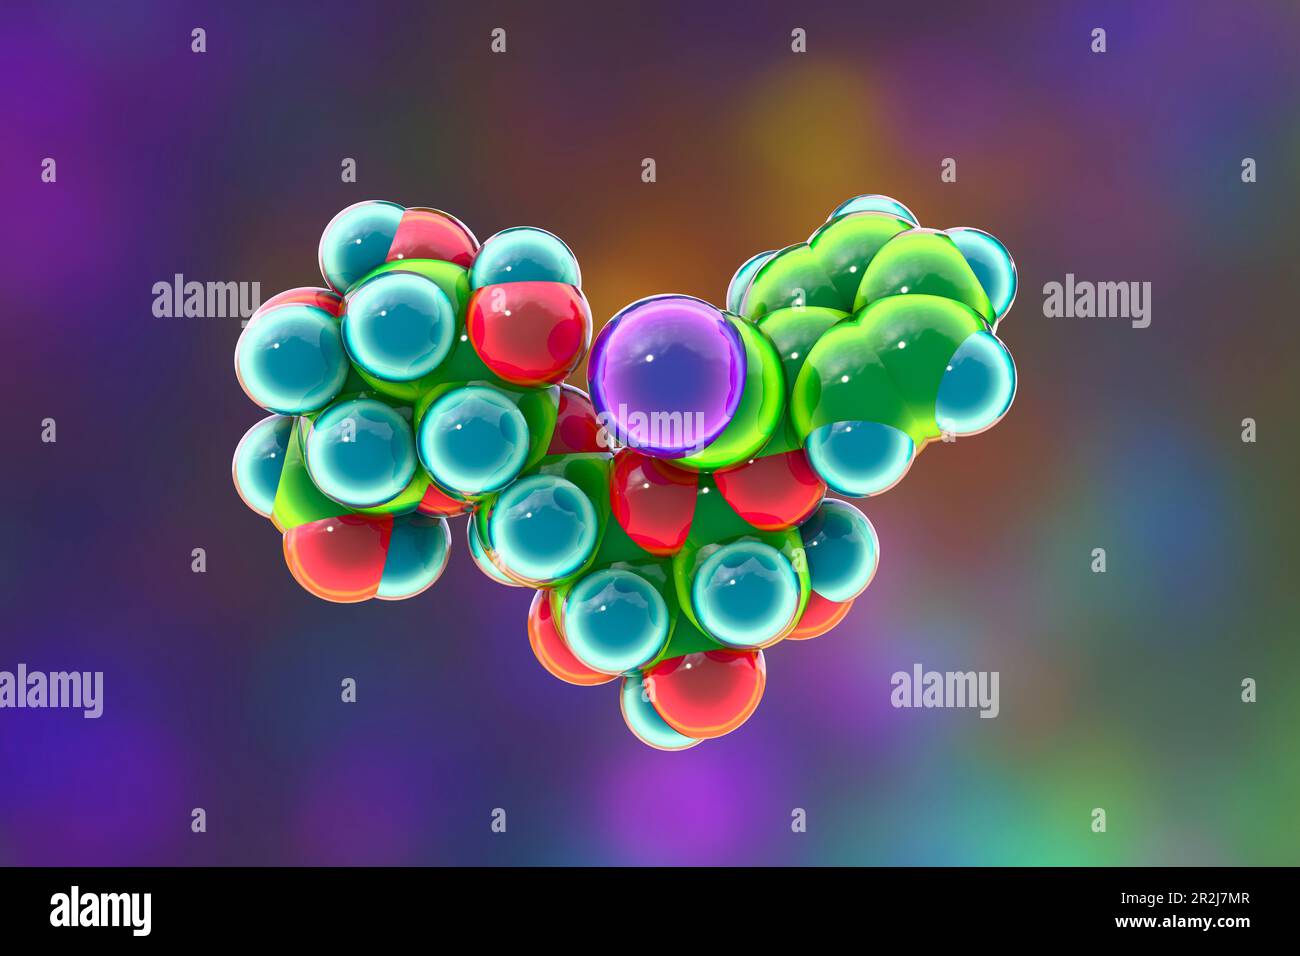 Molecular model of amygdalin, illustration Stock Photo